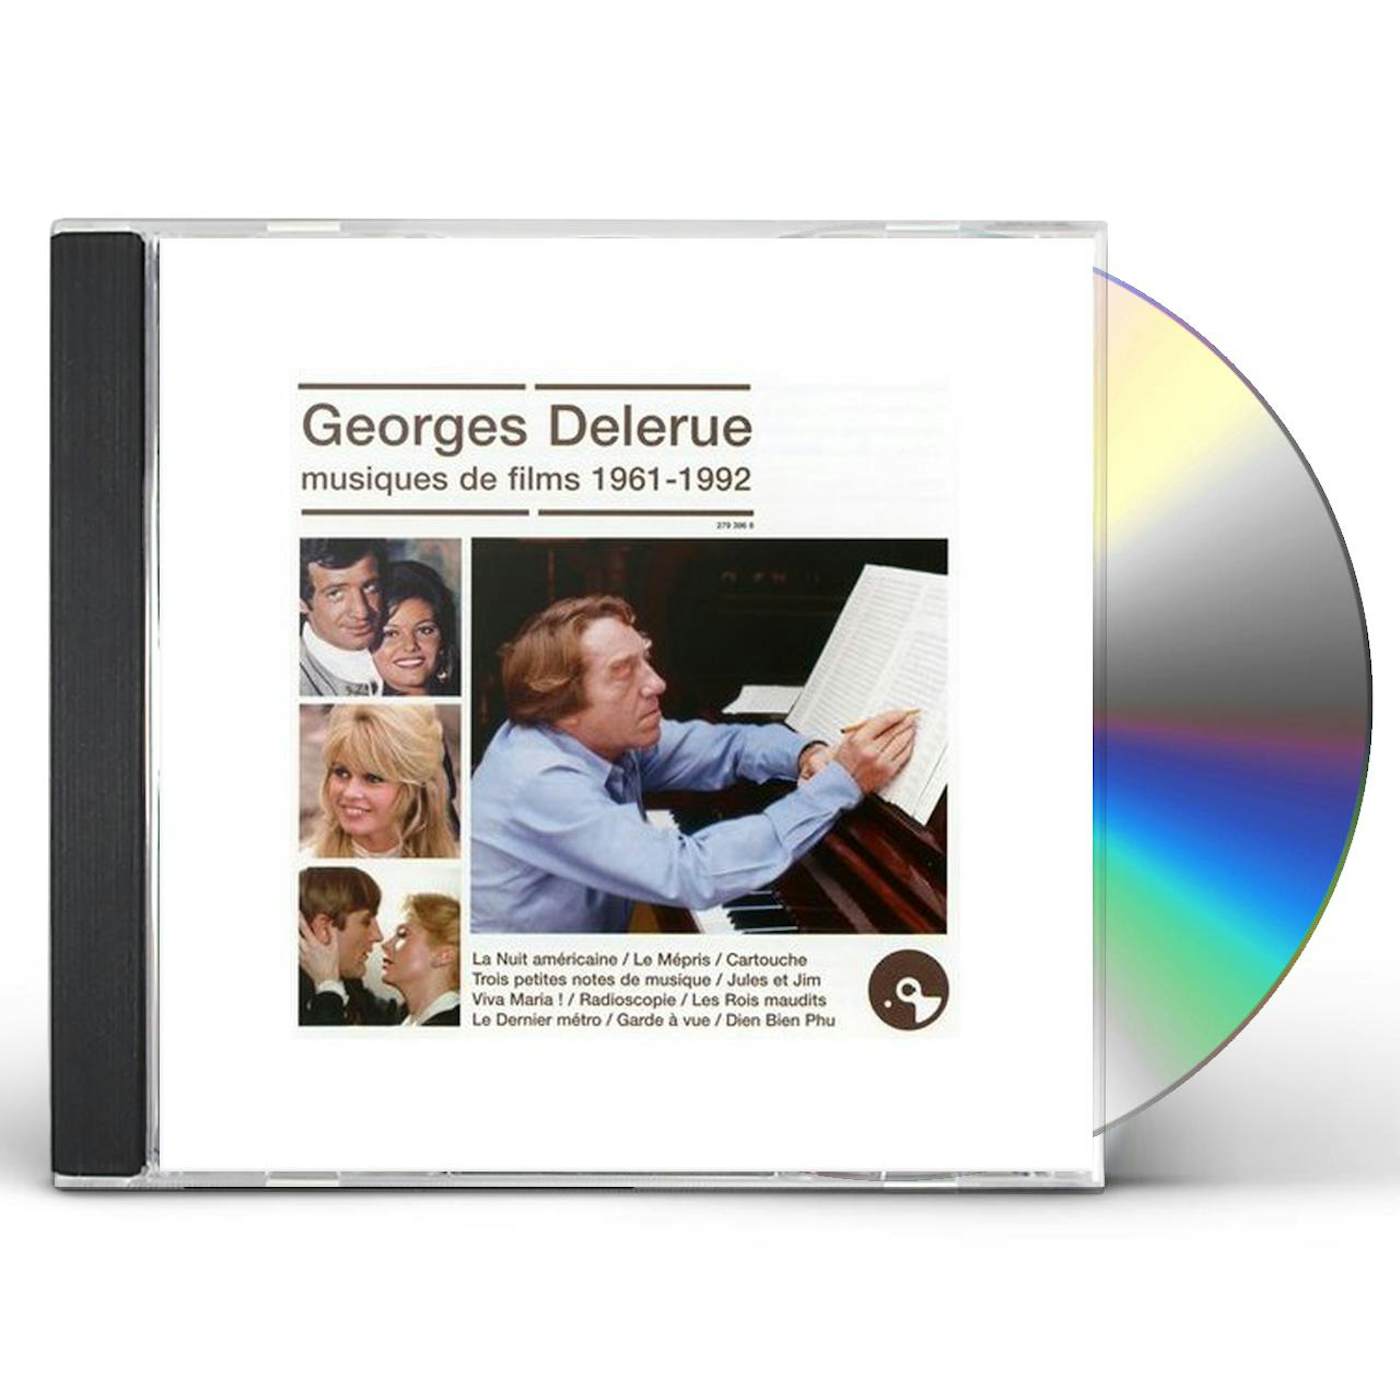 Georges Delerue MUSIQUES DE FILMS 1961 - 1992 CD